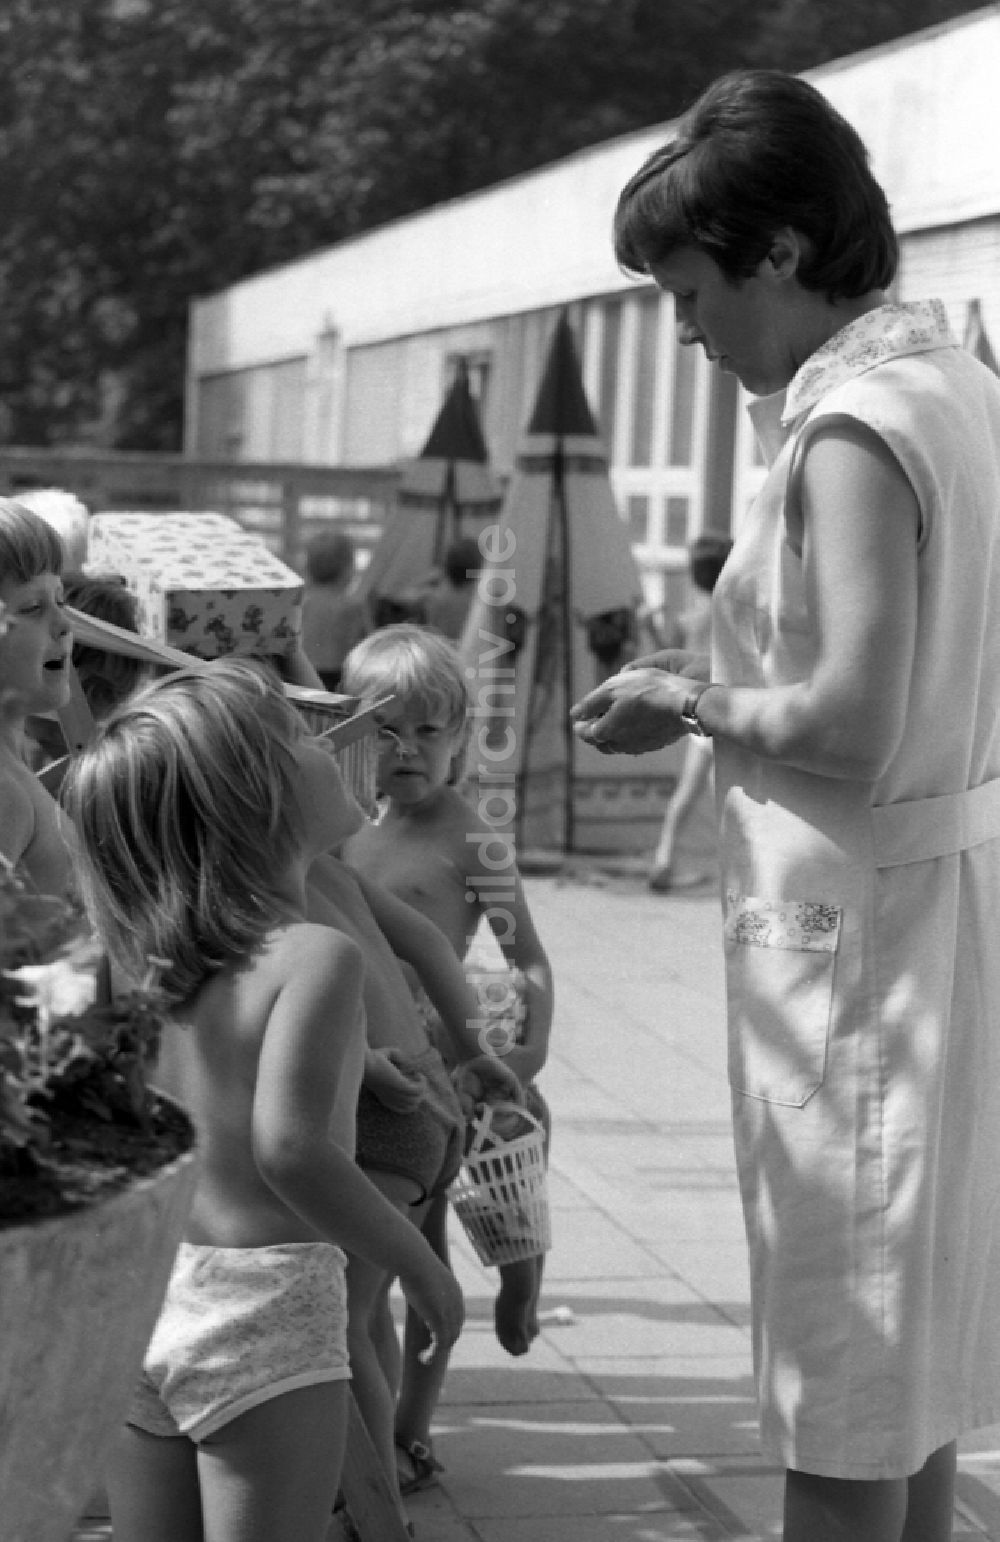 DDR-Fotoarchiv: Berlin - Sommer - Betreuung einer Kindergartengruppe auf einem Spielplatz in Berlin auf dem Gebiet der ehemaligen DDR, Deutsche Demokratische Republik